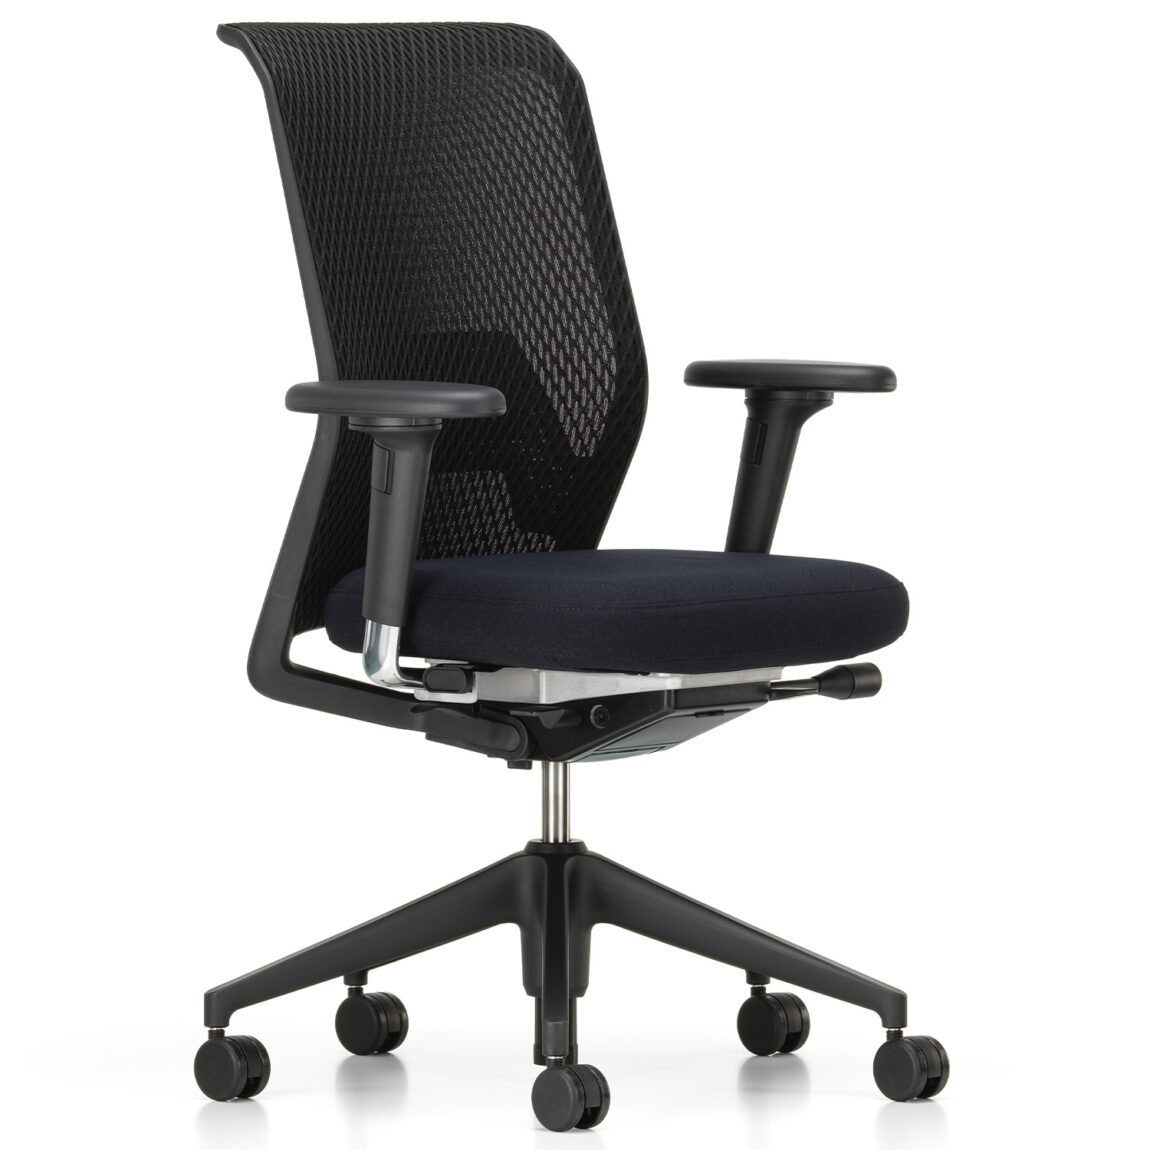 Výprodej Vitra designové kancelářské židle